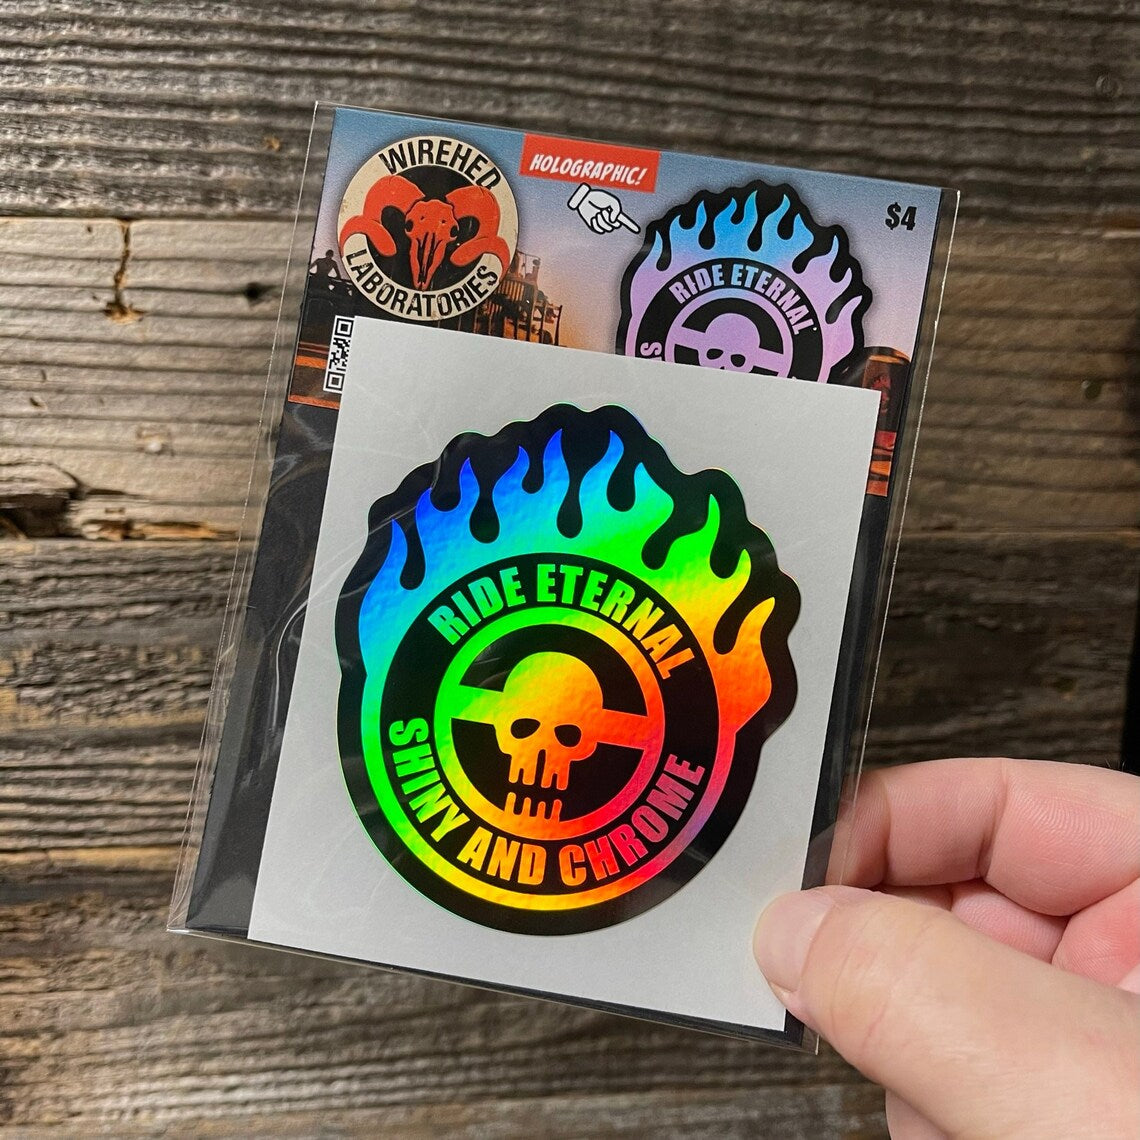 WAR BOY Holographic Sticker!